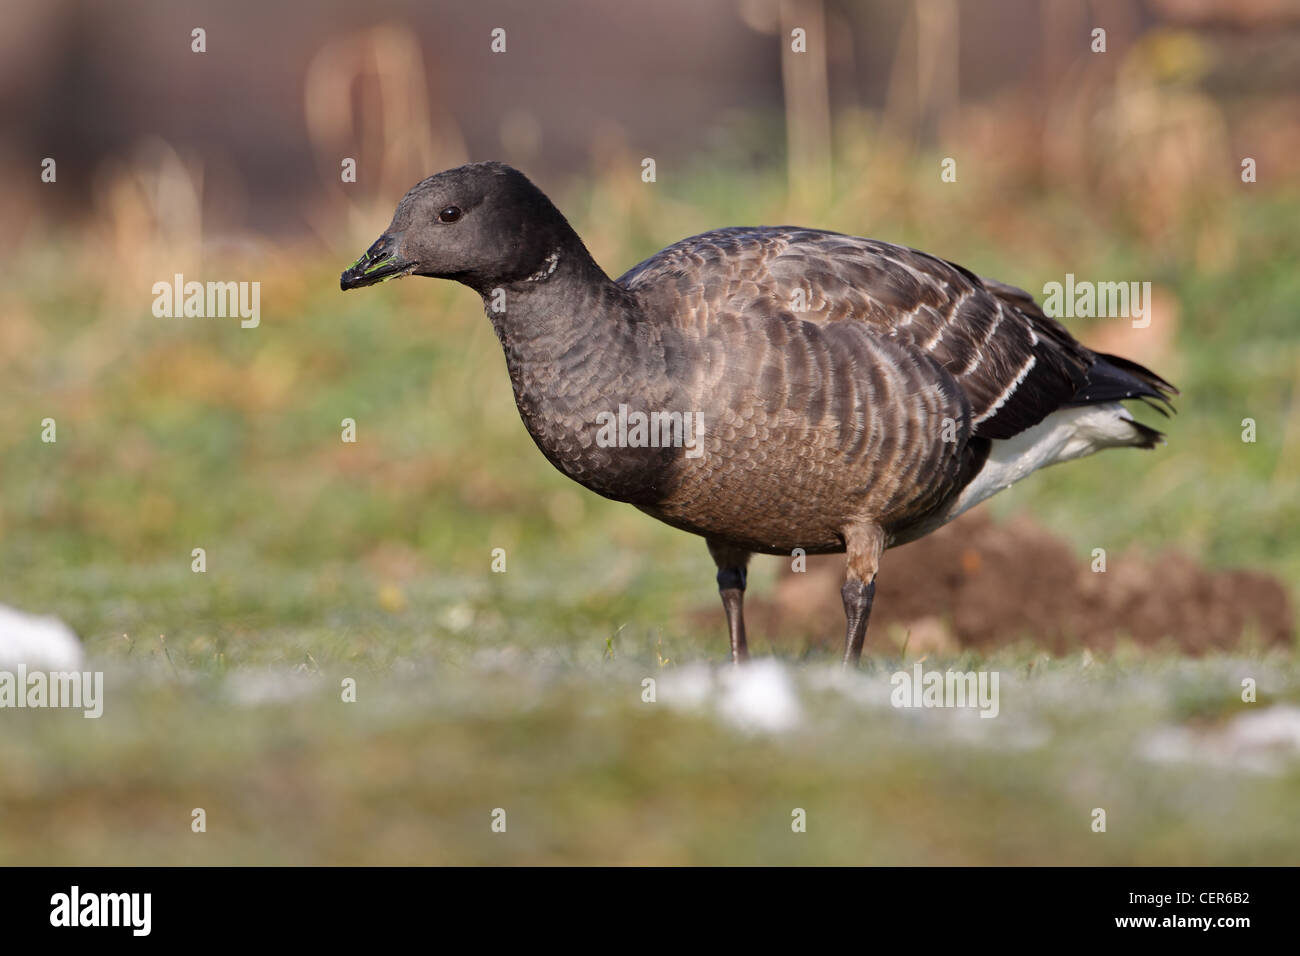 Dark-bellied Brant Goose (Branta bernicla bernicla) Stock Photo